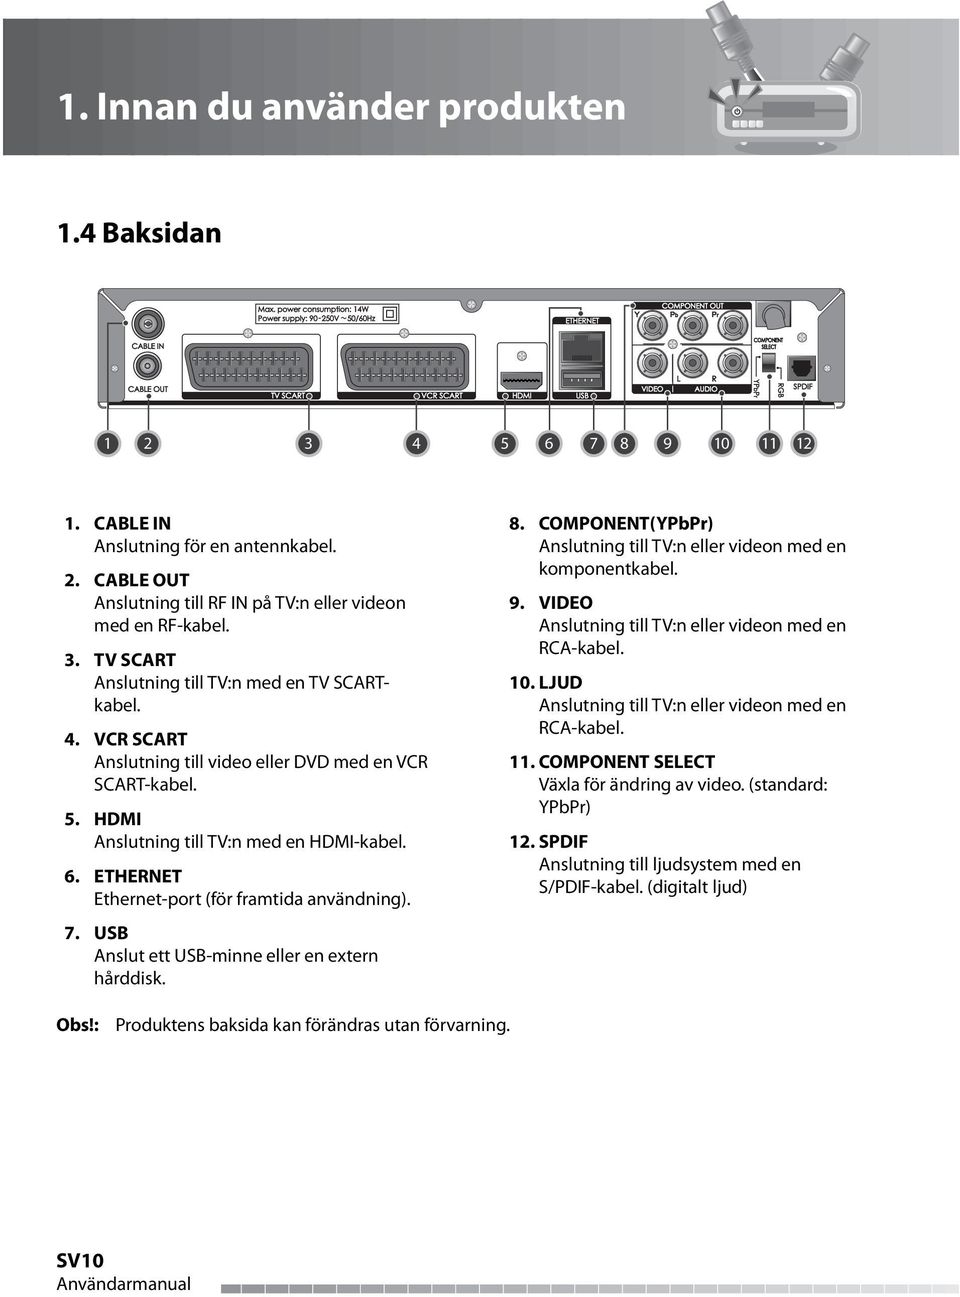 USB Anslut ett USB-minne eller en extern hårddisk. 8. COMPONENT(YPbPr) Anslutning till TV:n eller videon med en komponentkabel. 9. VIDEO Anslutning till TV:n eller videon med en RCA-kabel. 10.